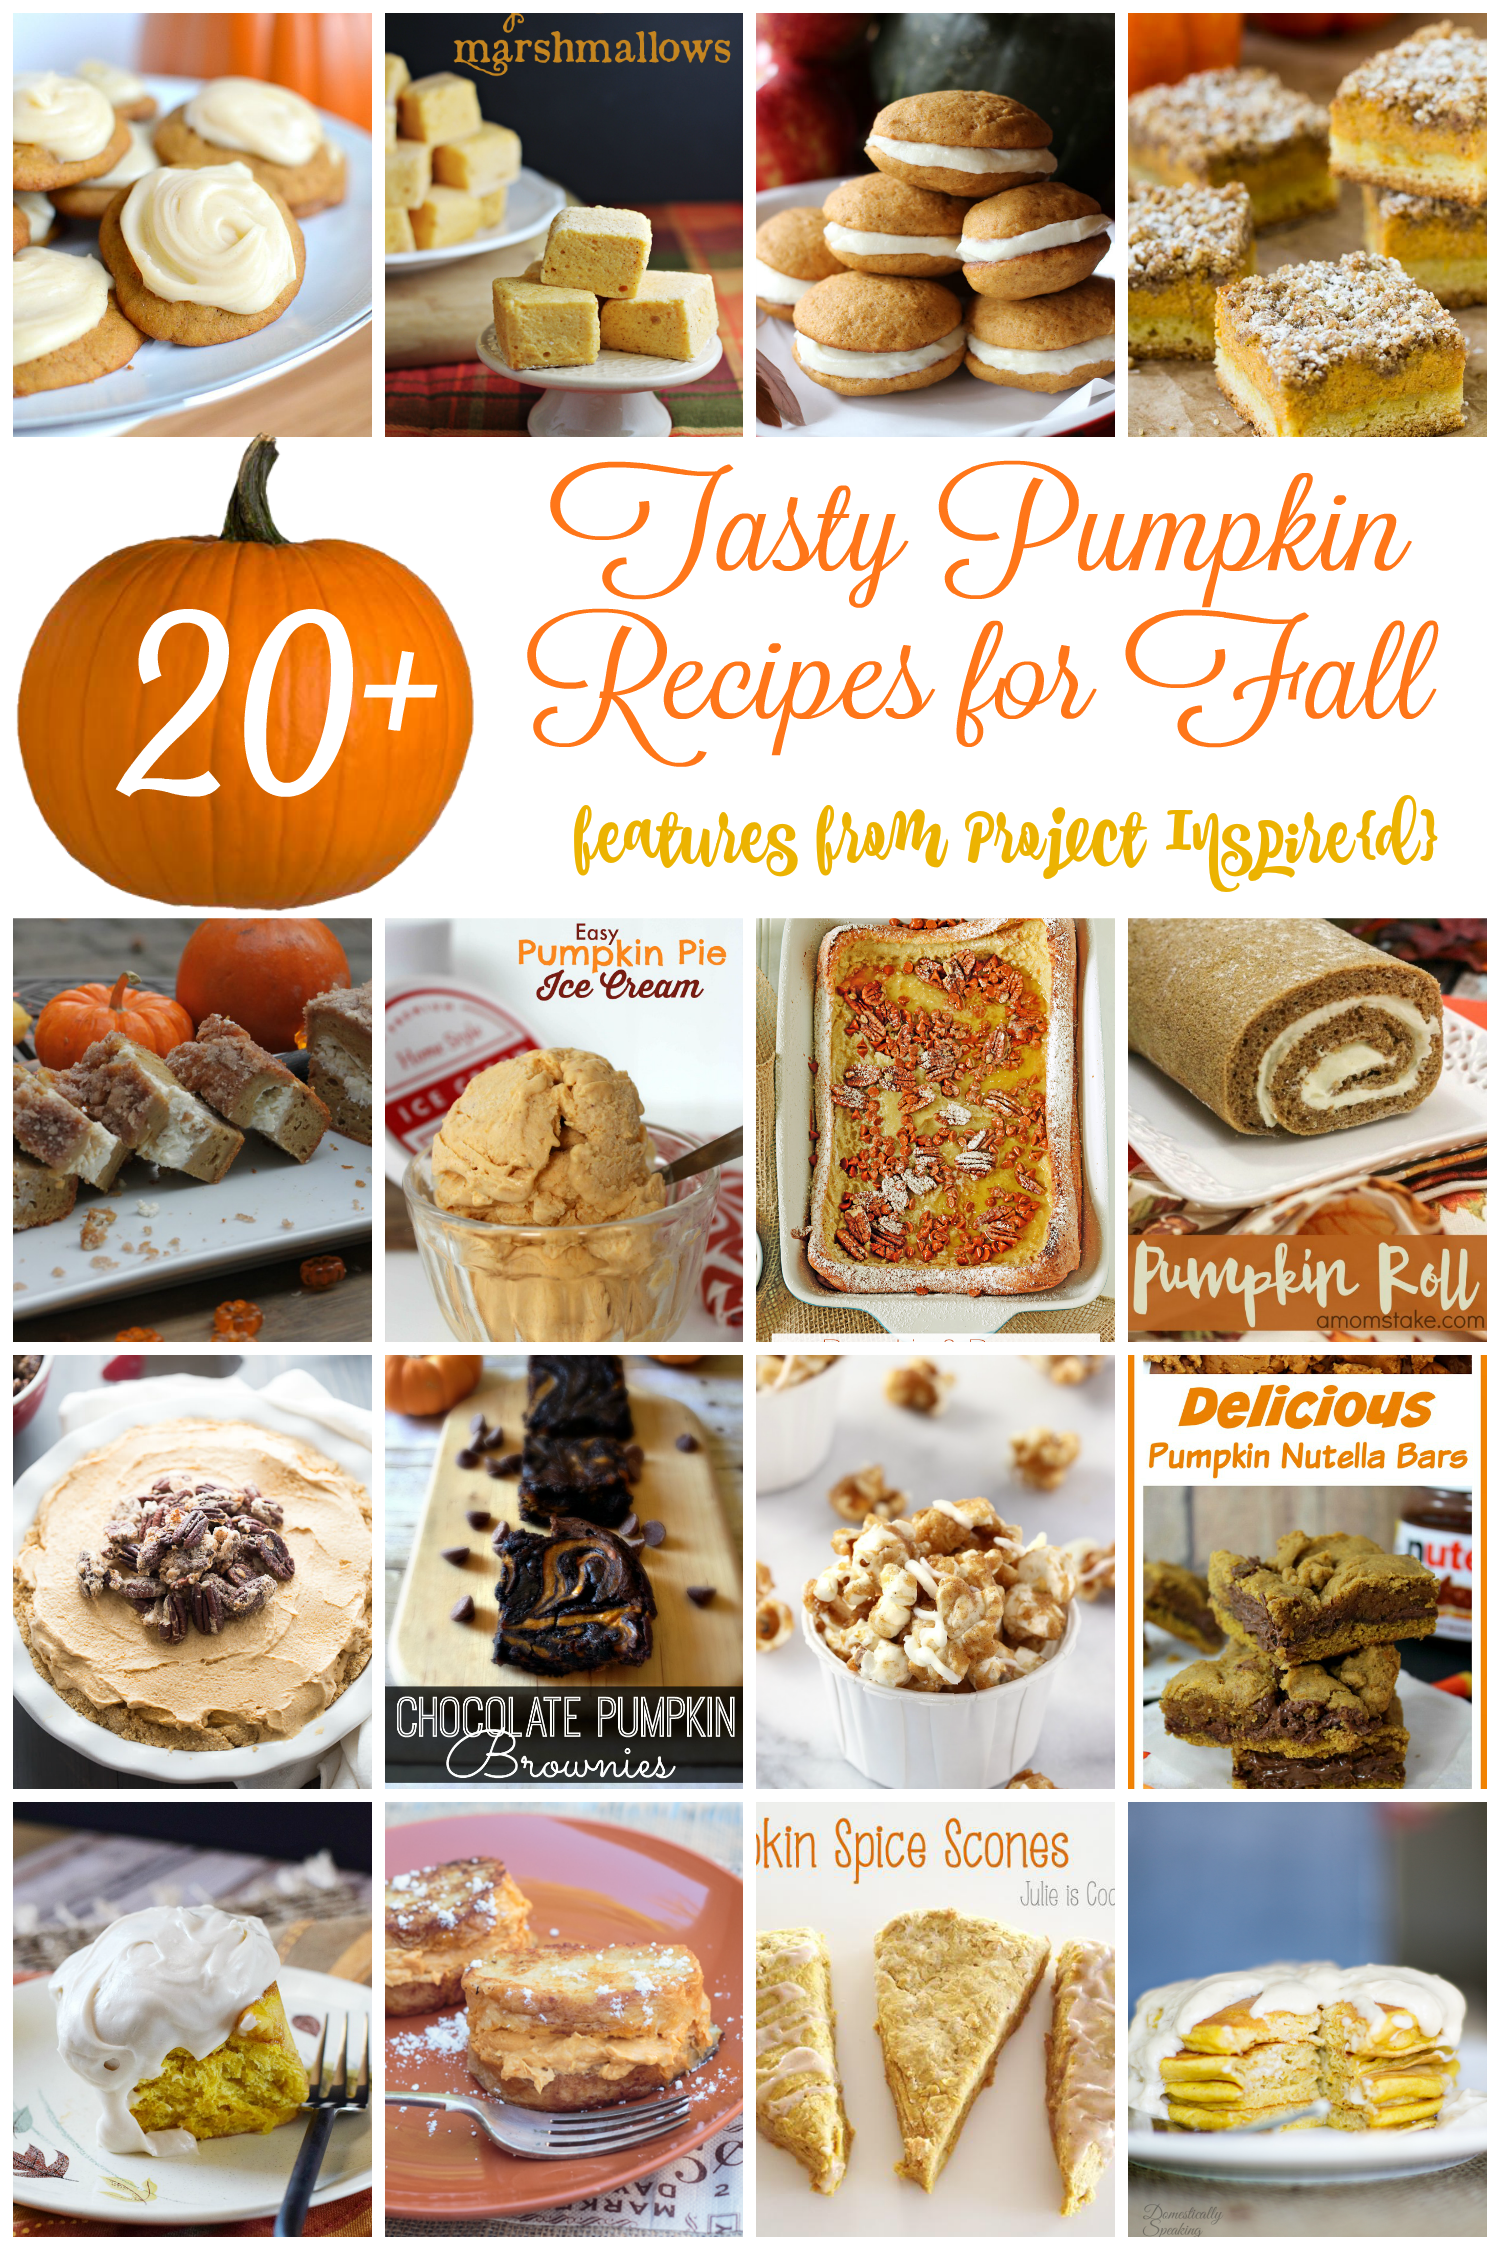 A collection of delicious pumpkin recipes